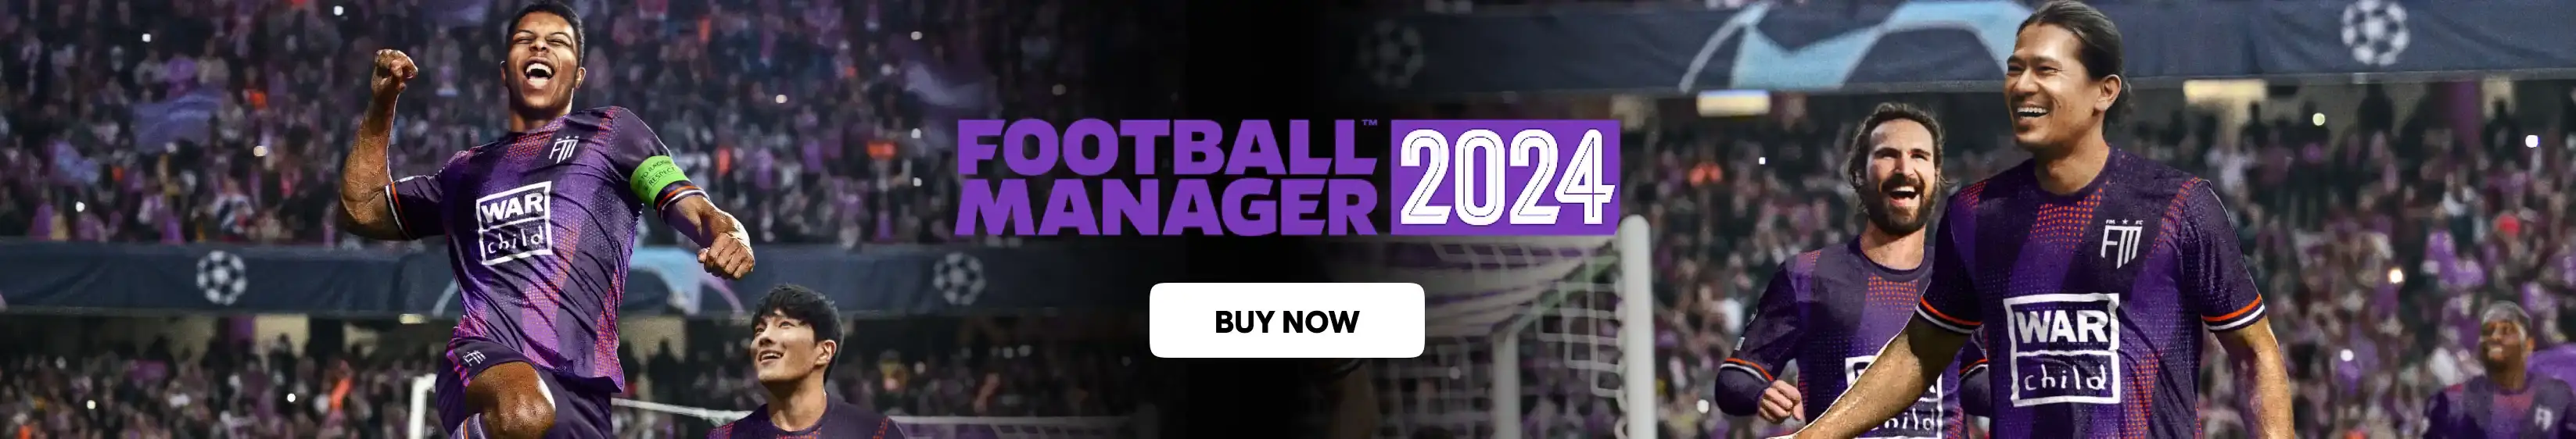 Football Manager 2024 - Desktop